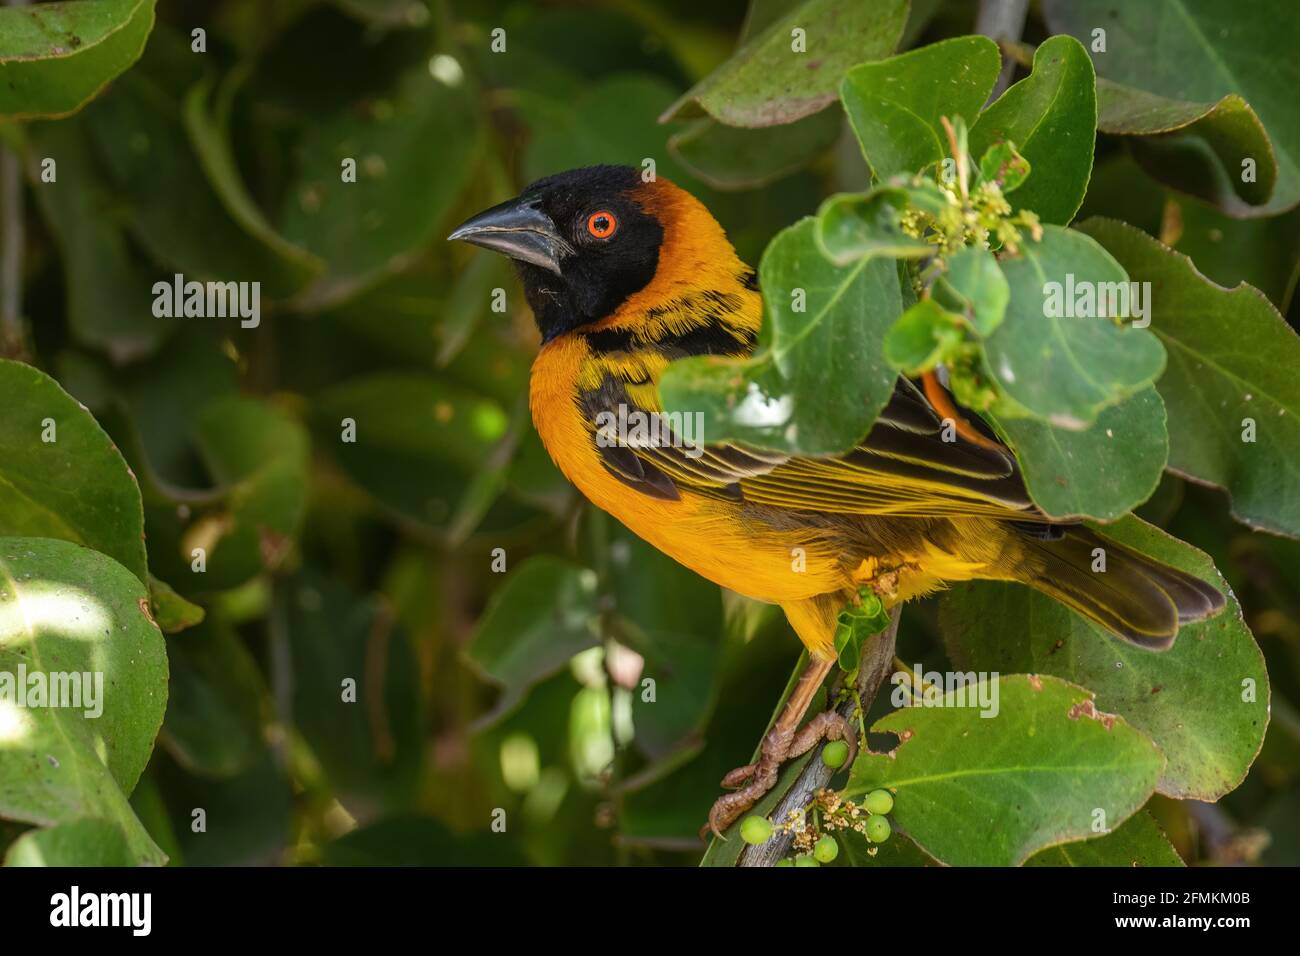 Village Weaver - Poceus cucullatus, magnifique oiseau jaune et noir provenant de forêts et de jardins africains, lac Ziway, Éthiopie. Banque D'Images